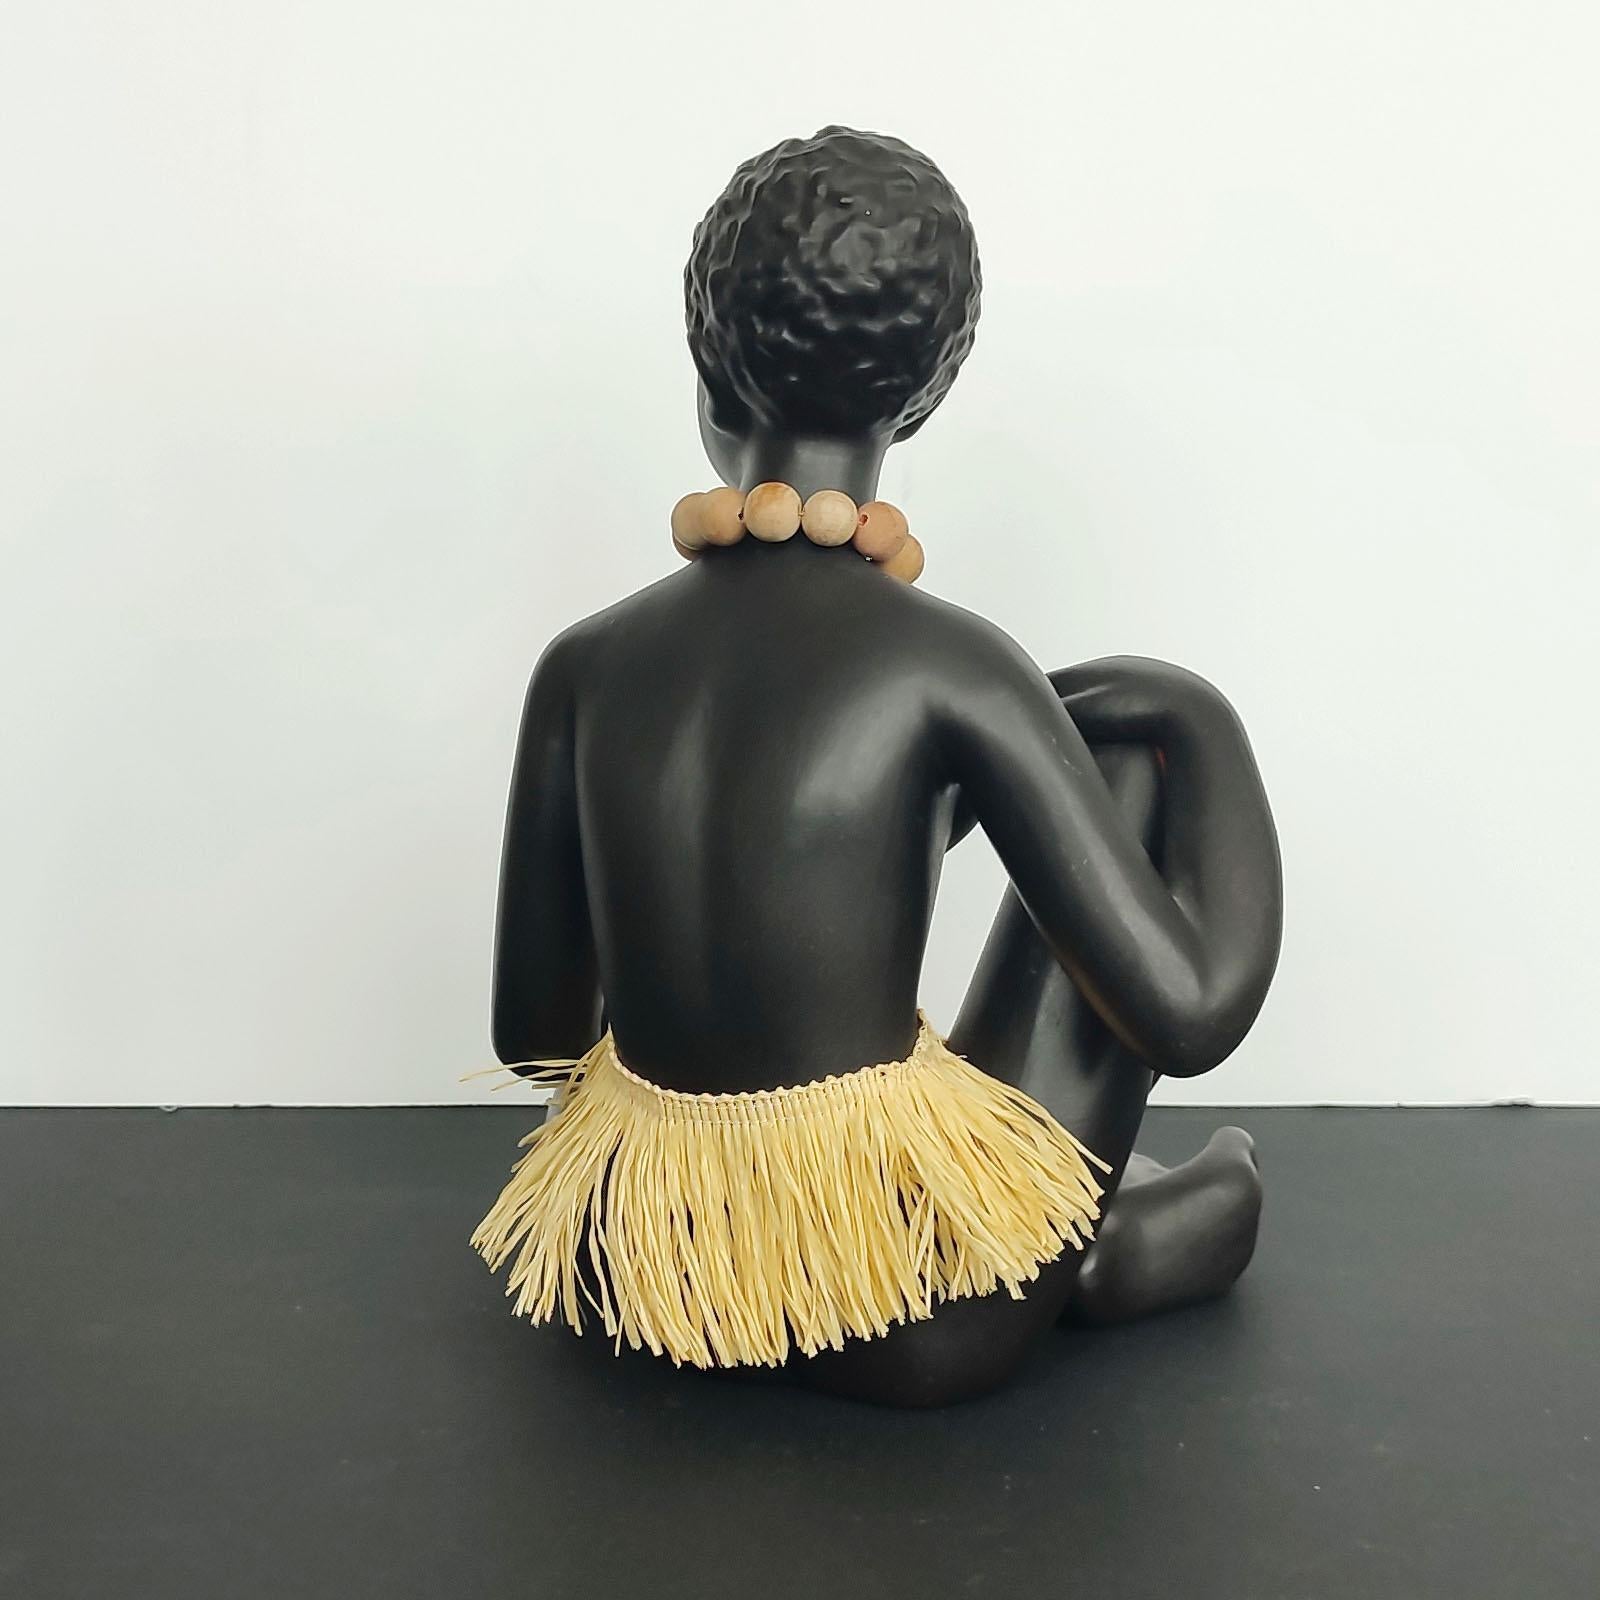 antique black figurines